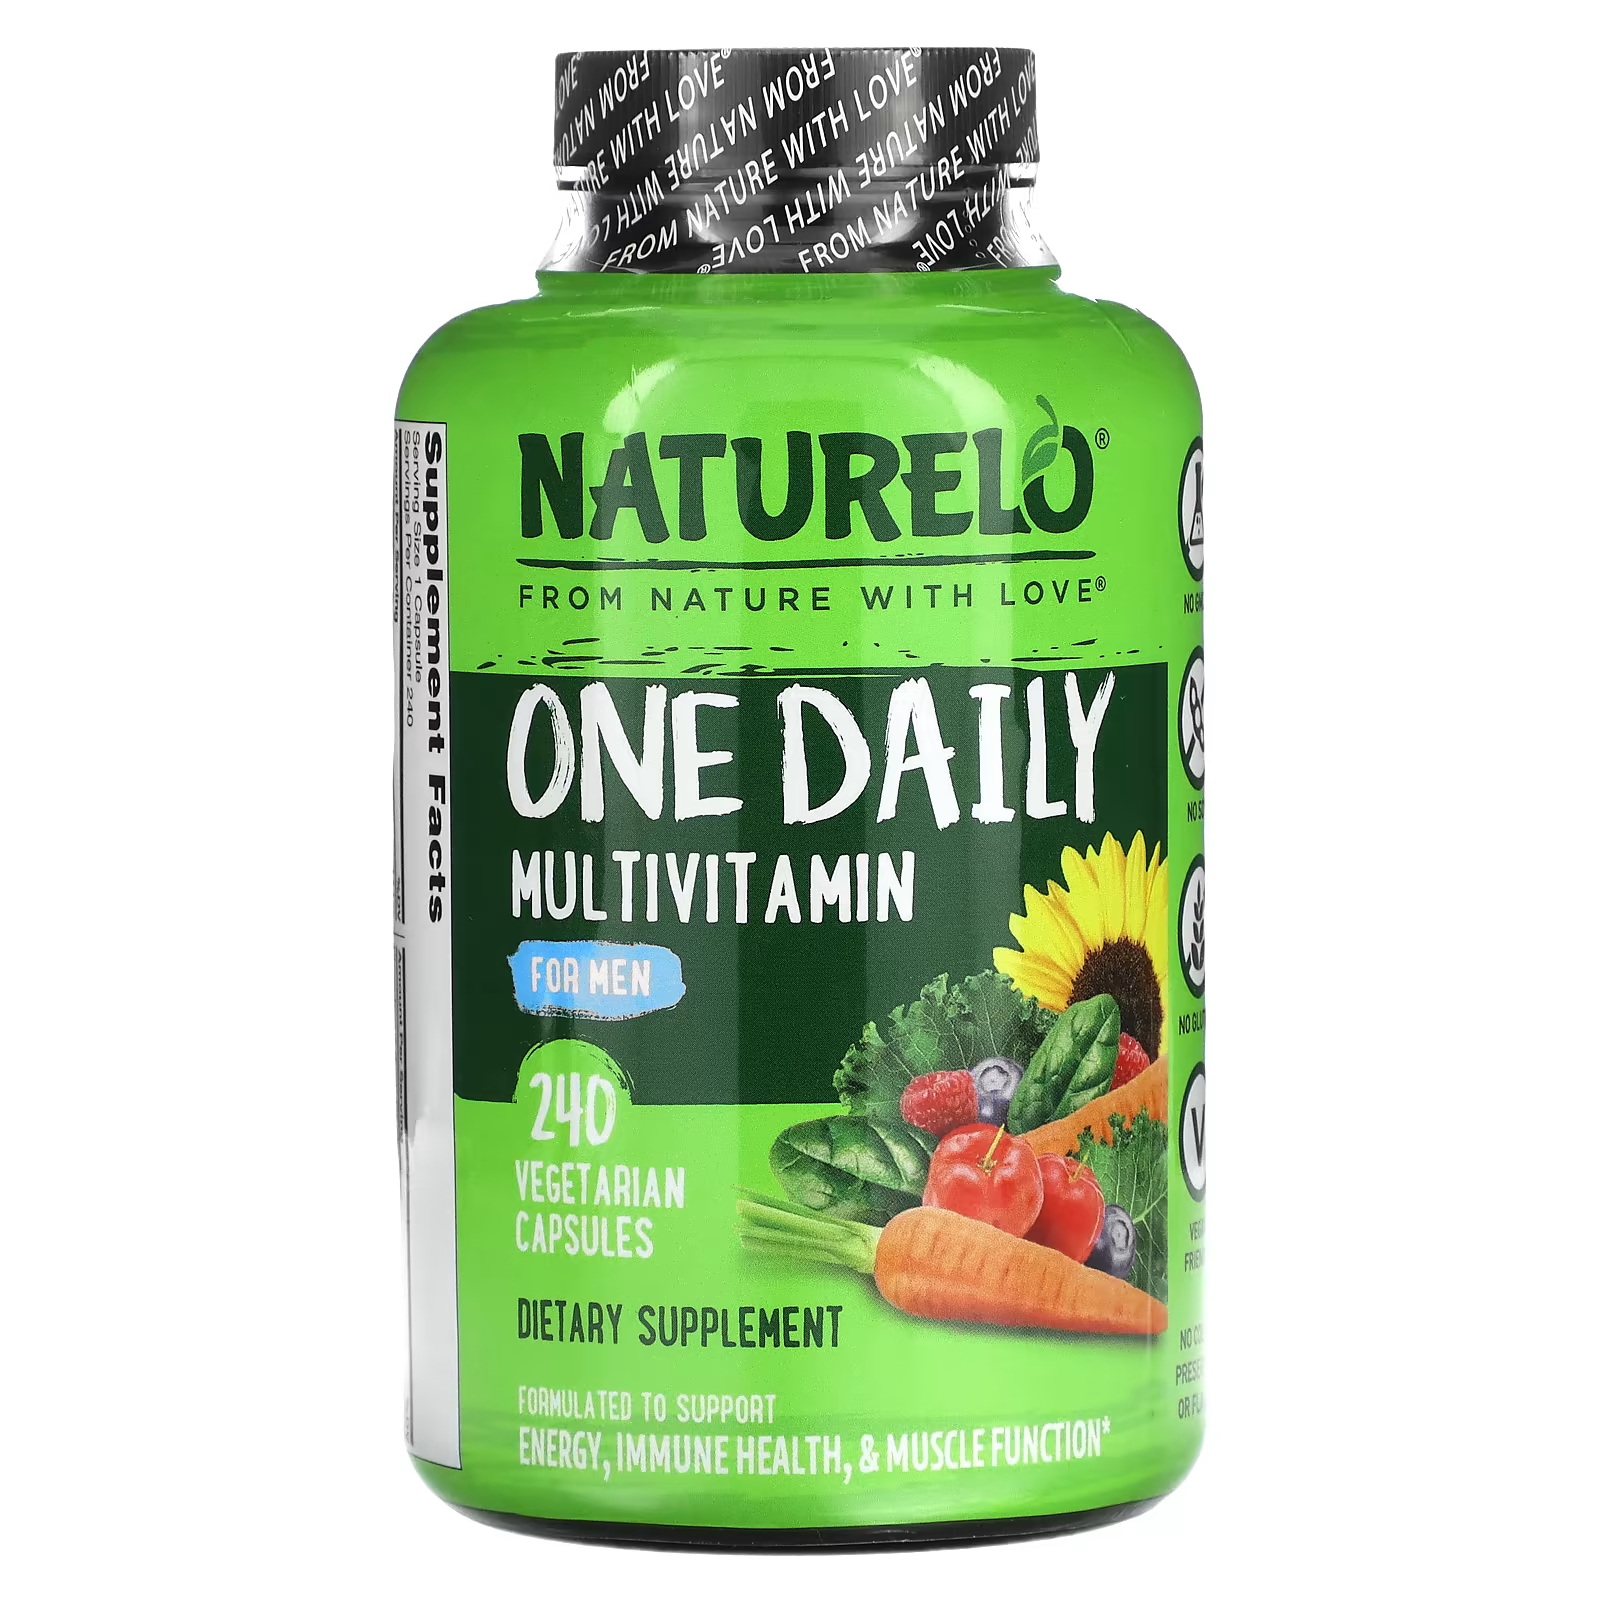 Мультивитамины добавка Naturelo для мужчин, 240 капсул naturelo мультивитамины для мужчин one daily 240 вегетарианских капсул